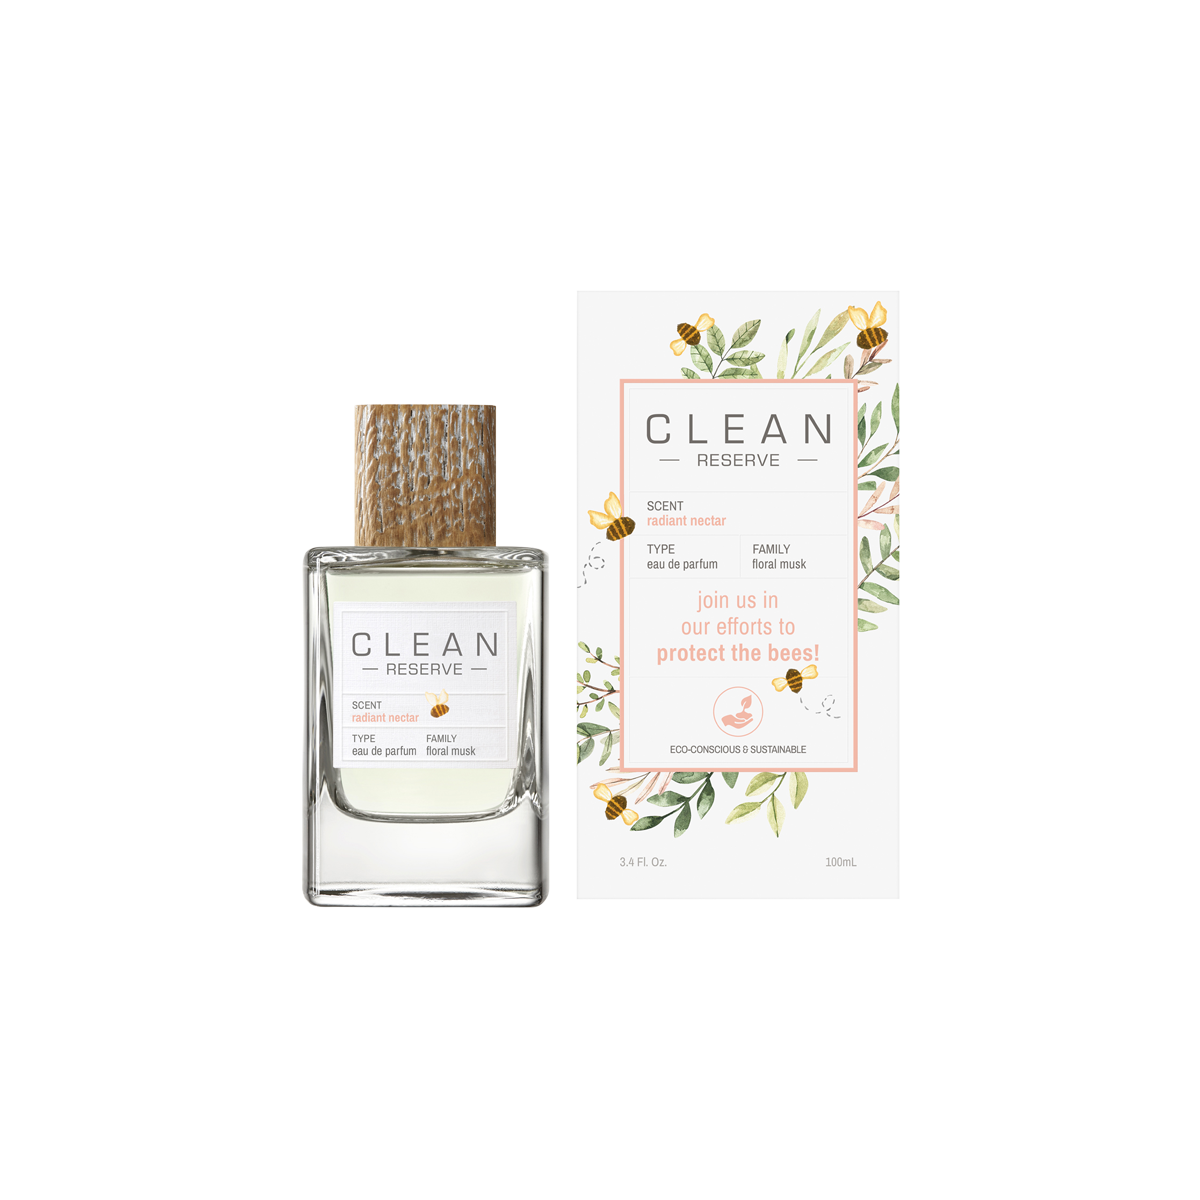 CLEAN BEAUTY - CLEAN RESERVE Radiant Nectar Eau de Parfum